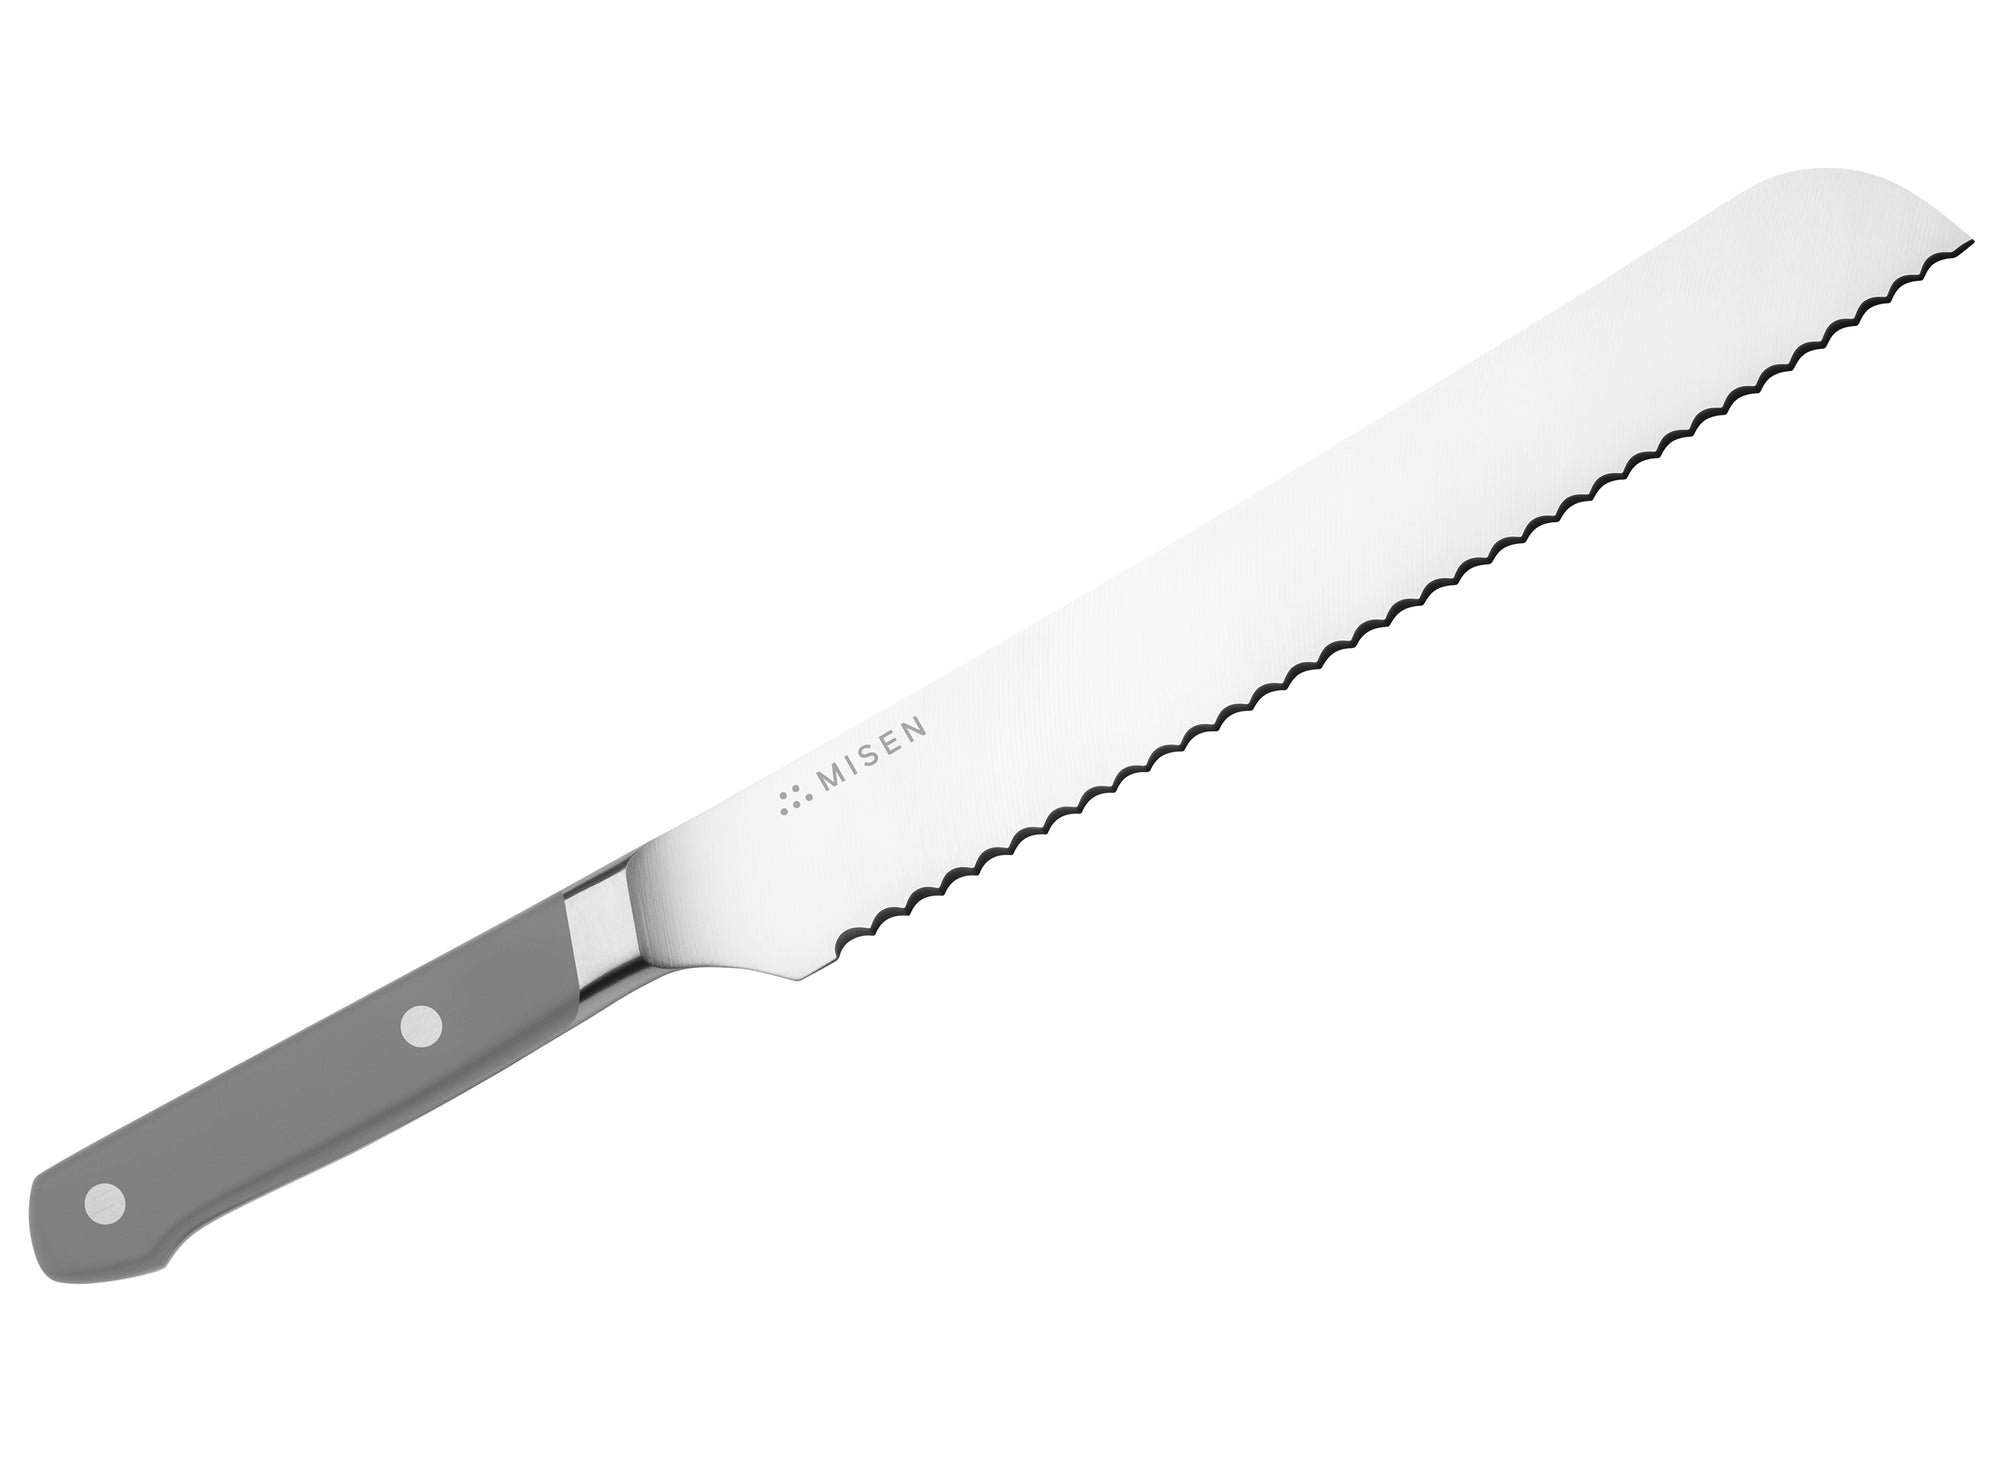  Misen Serrated Bread Knife - 9.5 Inch Bread Cutter